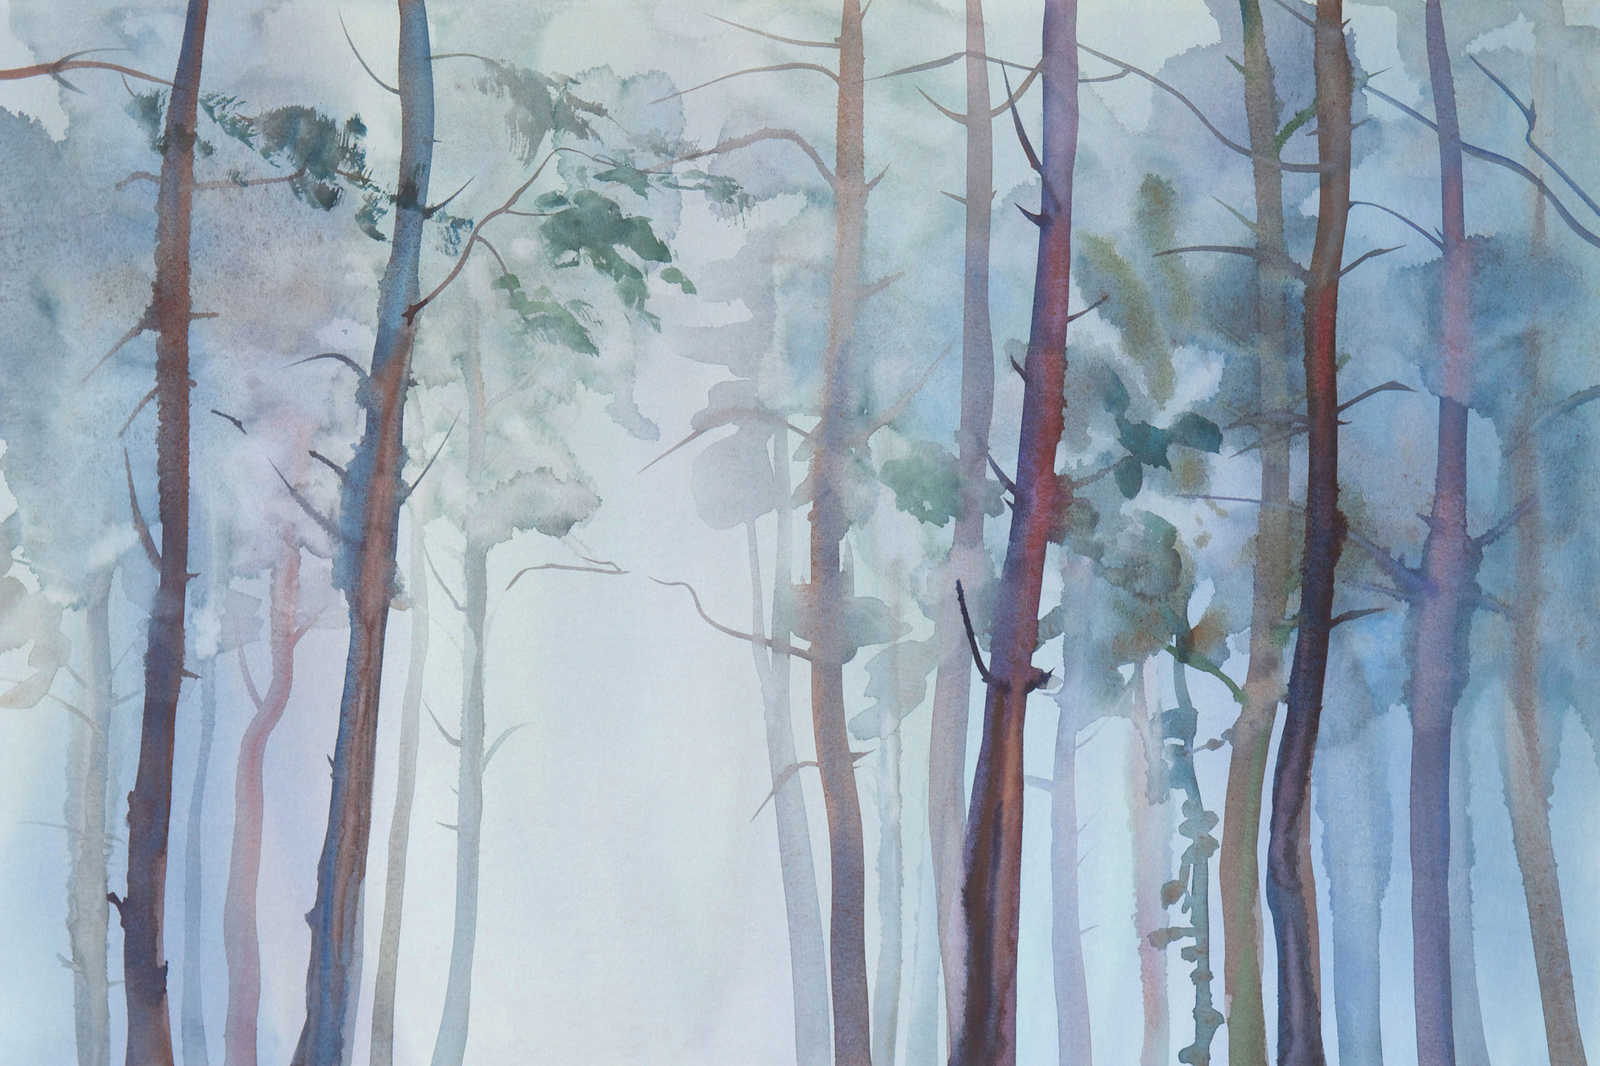             Tela con motivo forestale in stile acquerello - 0,90 m x 0,60 m
        